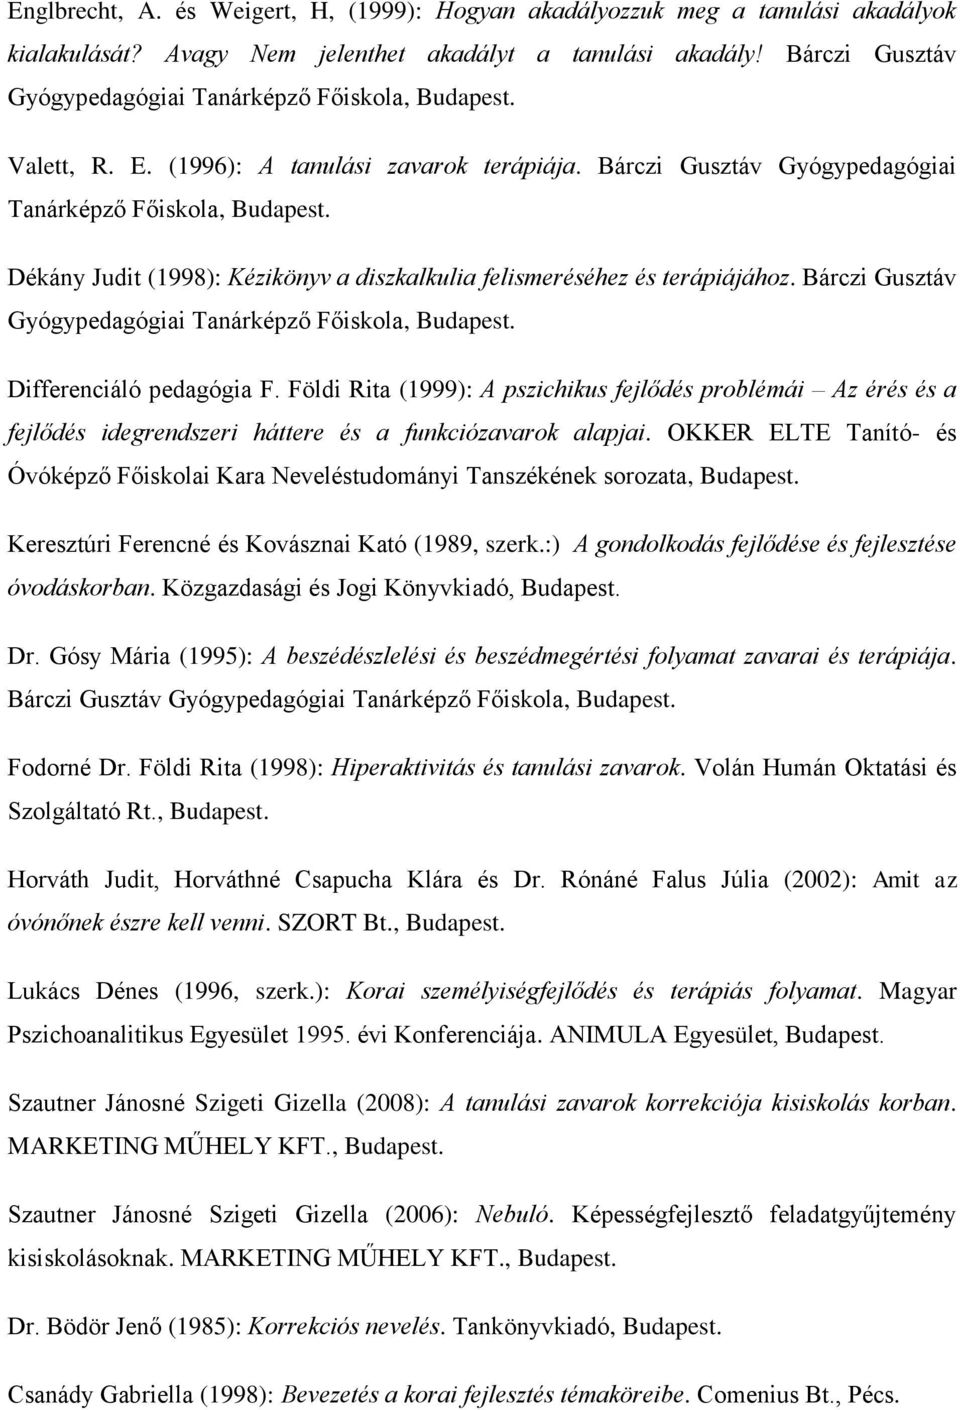 Bárczi Gusztáv Gyógypedagógiai Tanárképző Főiskola, Dékány Judit (1998): Kézikönyv a diszkalkulia felismeréséhez és terápiájához.